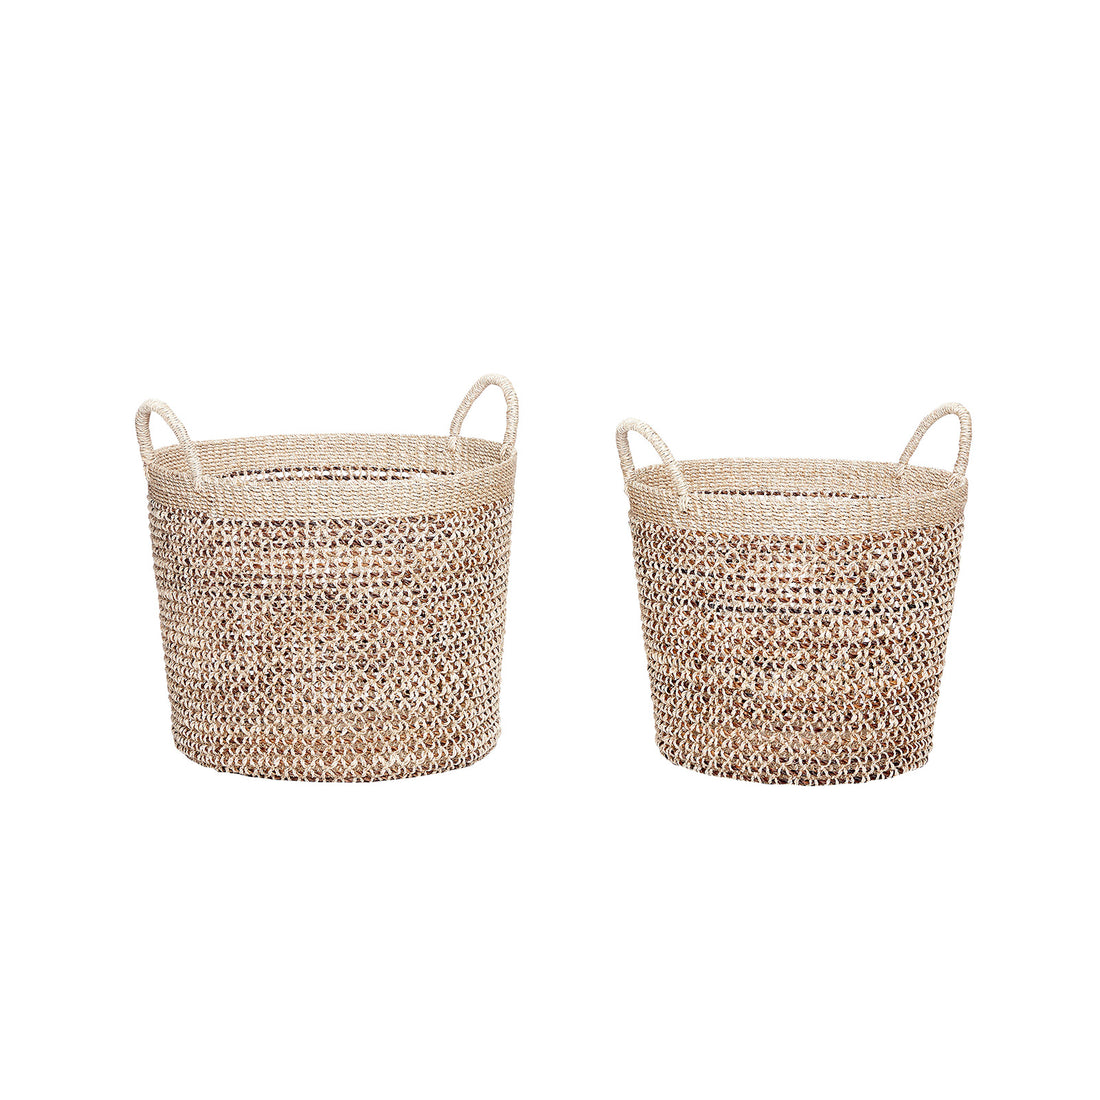 Hübsch - basket w/handle, round, nature, s/2 - more sizes